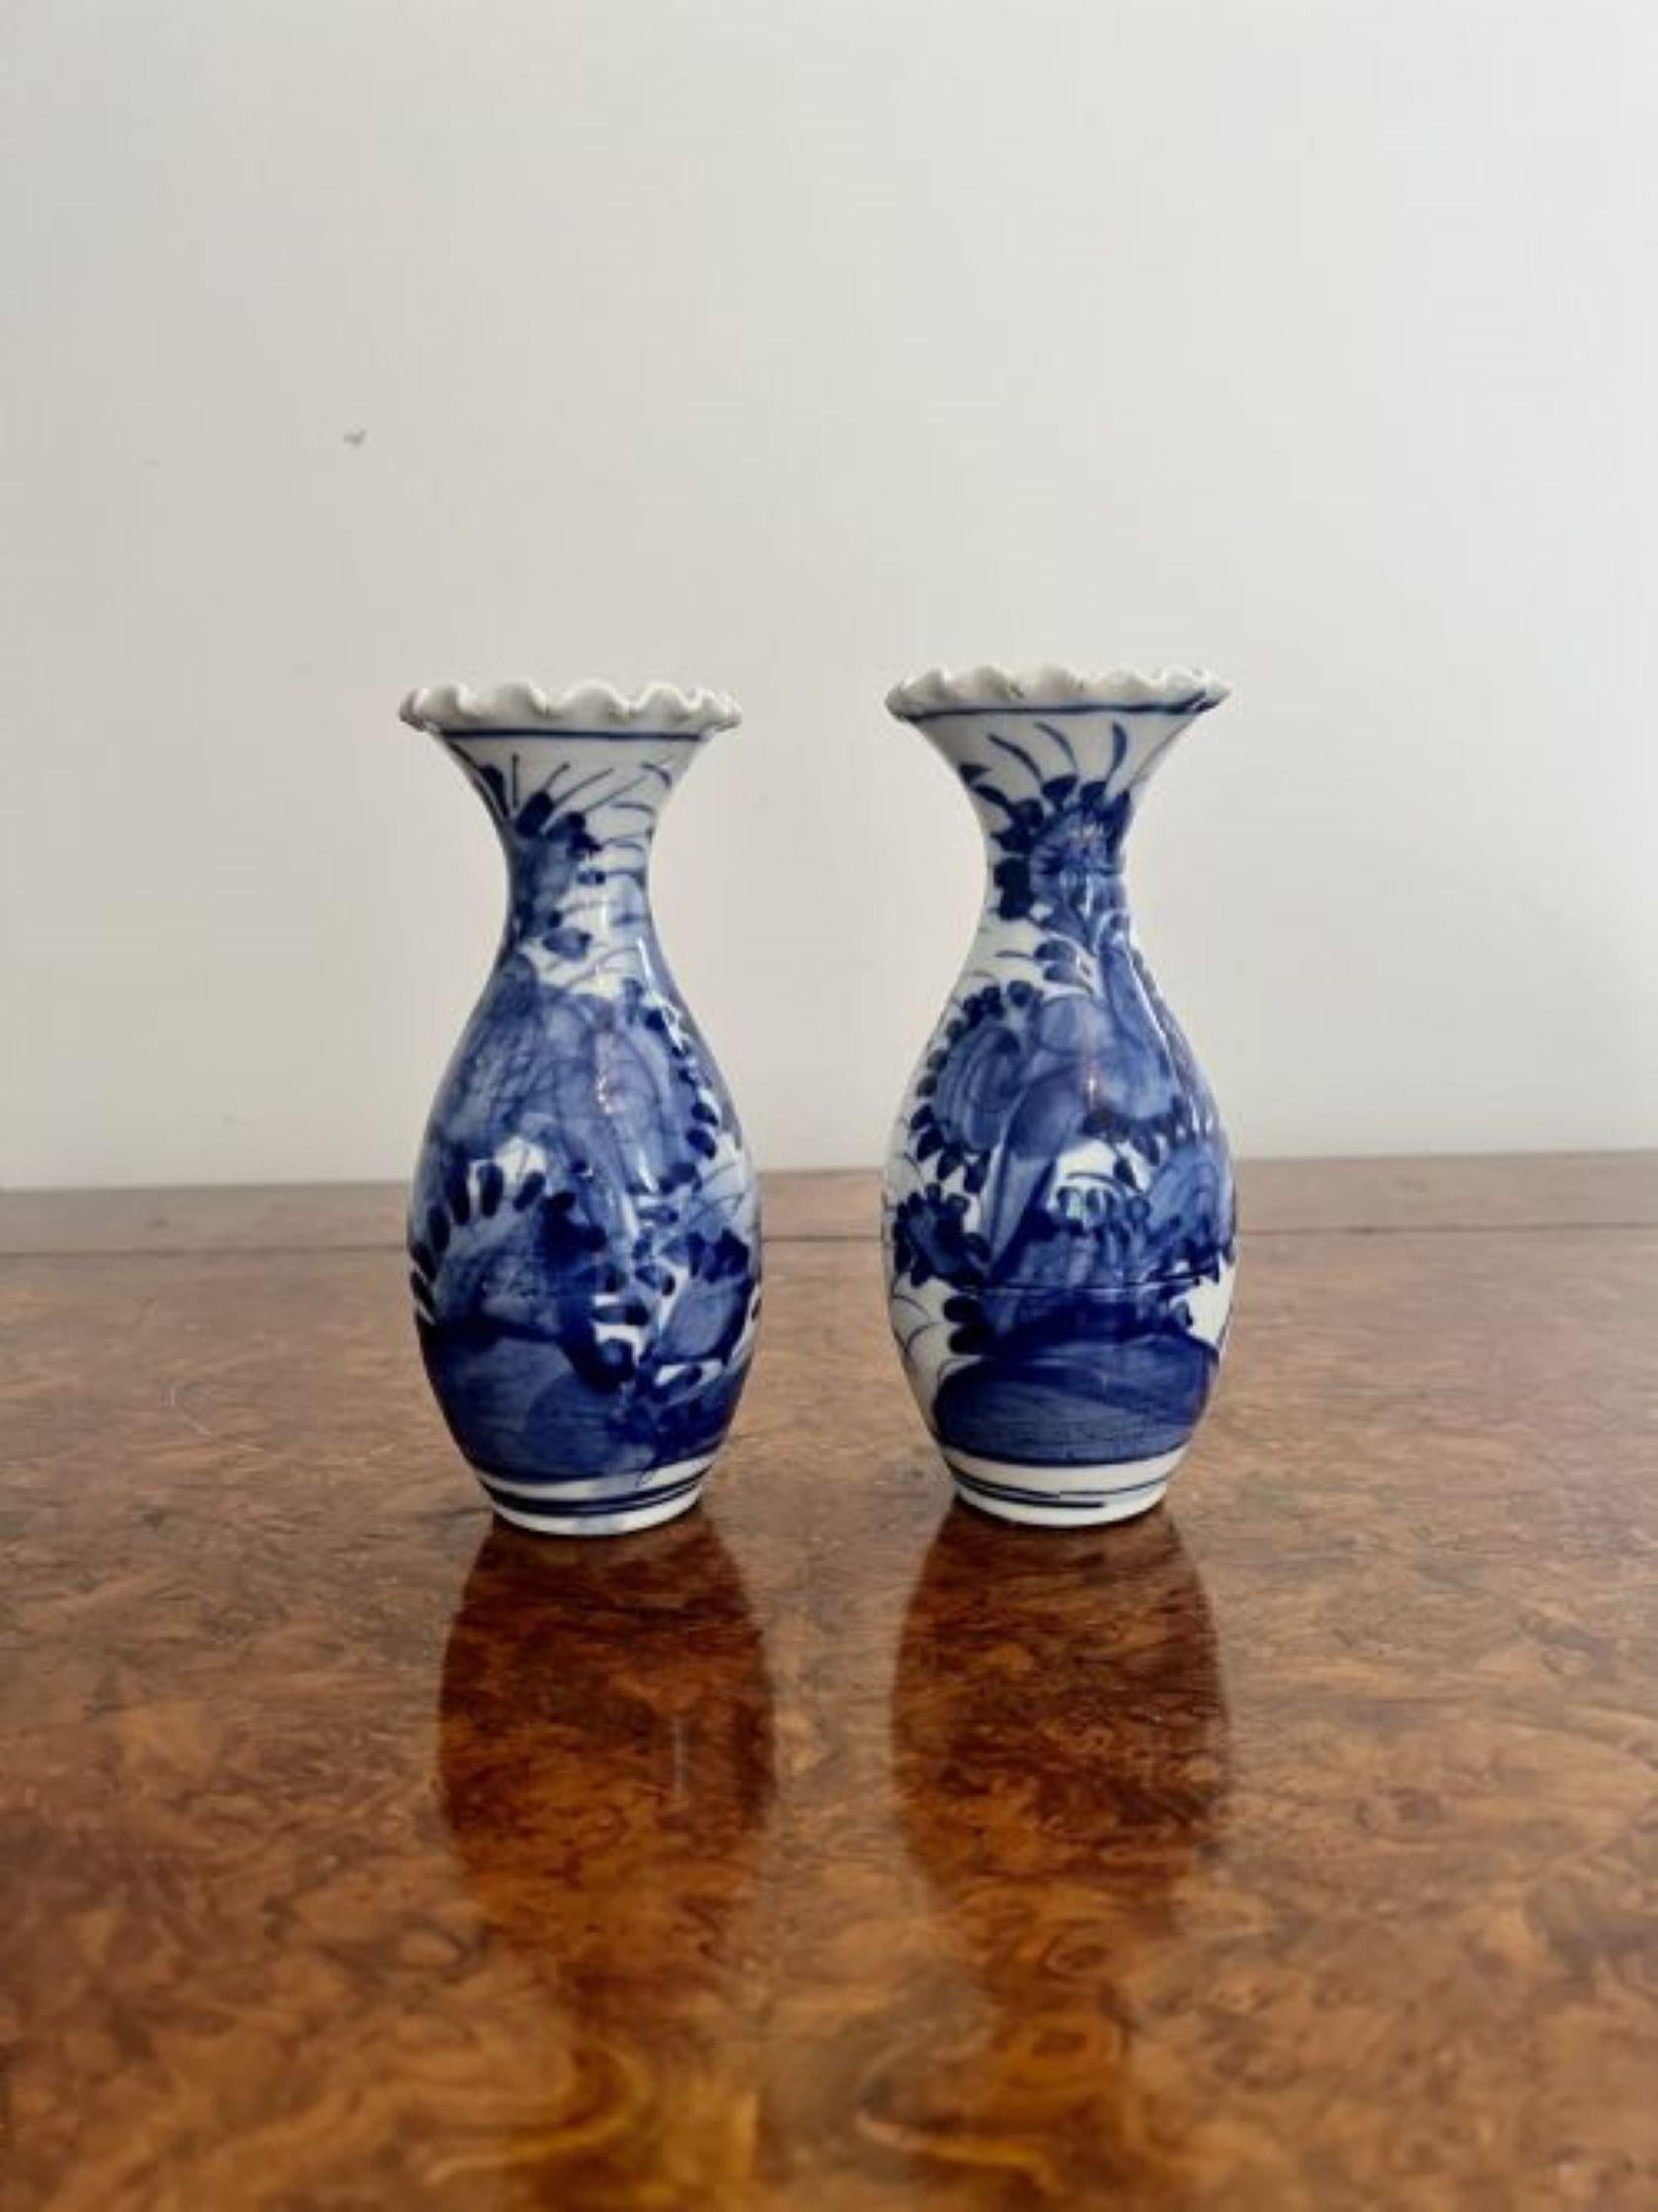 Paire de vases balustres japonais imari bleu et blanc de qualité, peints à la main dans de superbes couleurs bleu et blanc, décorés de fleurs, avec un bord cannelé et ondulé.